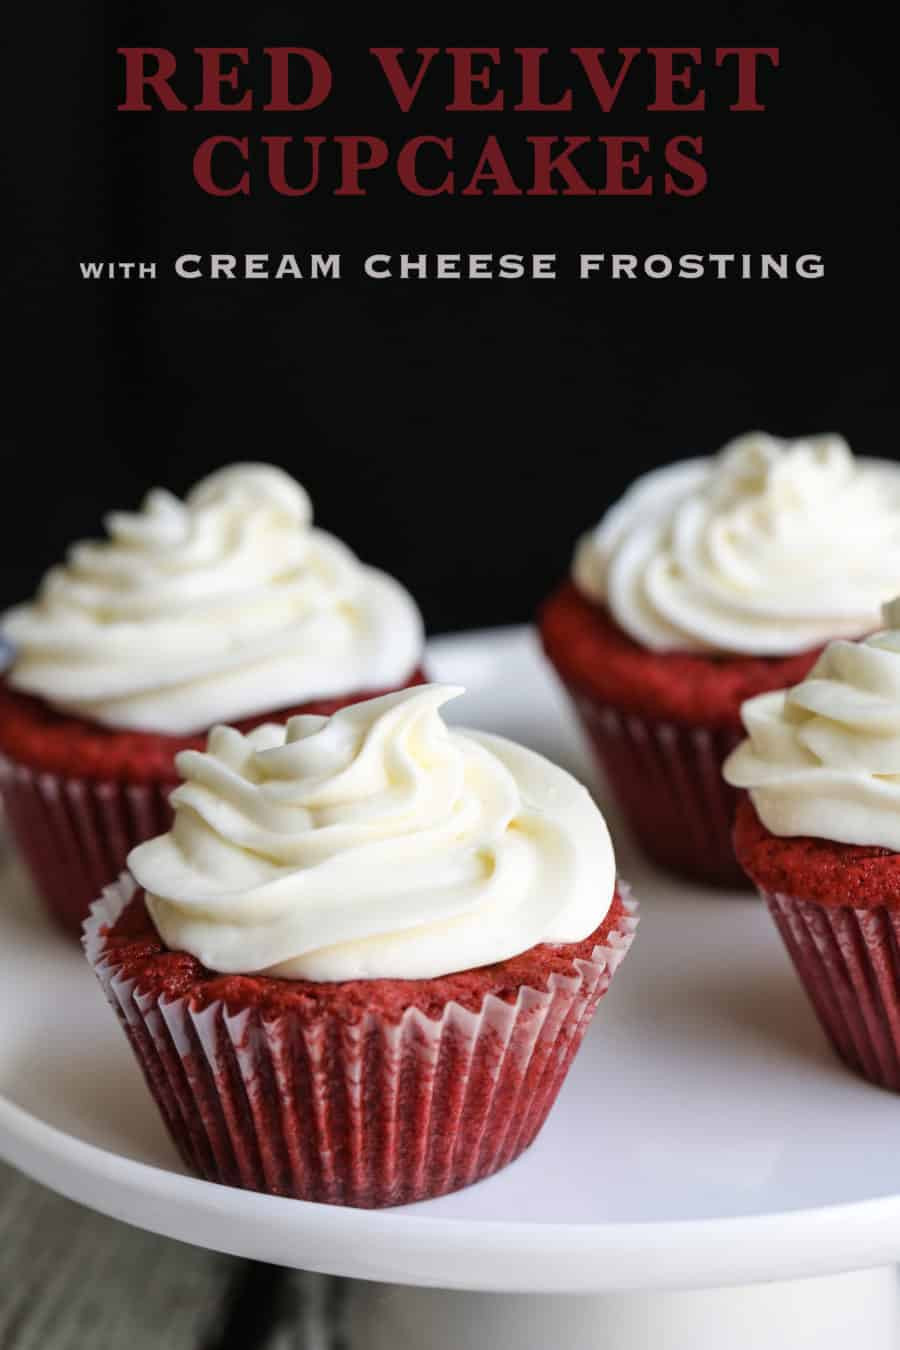 Cream Cheese Frosting For Red Velvet Cake
 Red Velvet Cupcakes with Cream Cheese Frosting